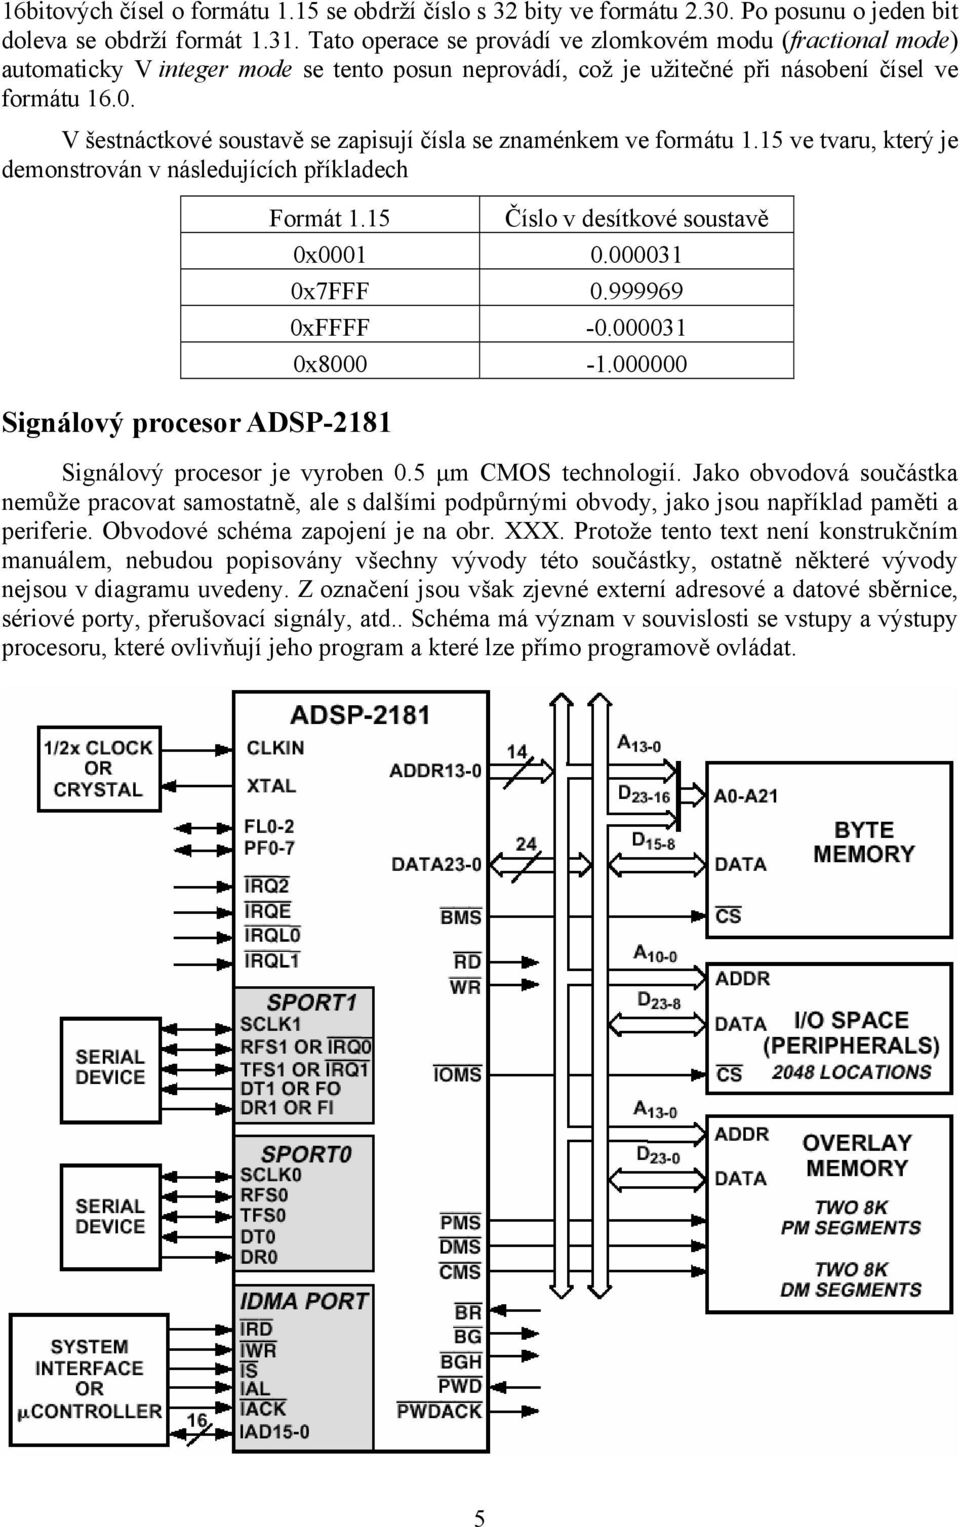 V šestnáctkové soustavě se zapisují čísla se znaménkem ve formátu 1.15 ve tvaru, který je demonstrován v následujících příkladech Signálový procesor ADSP-2181 Formát 1.